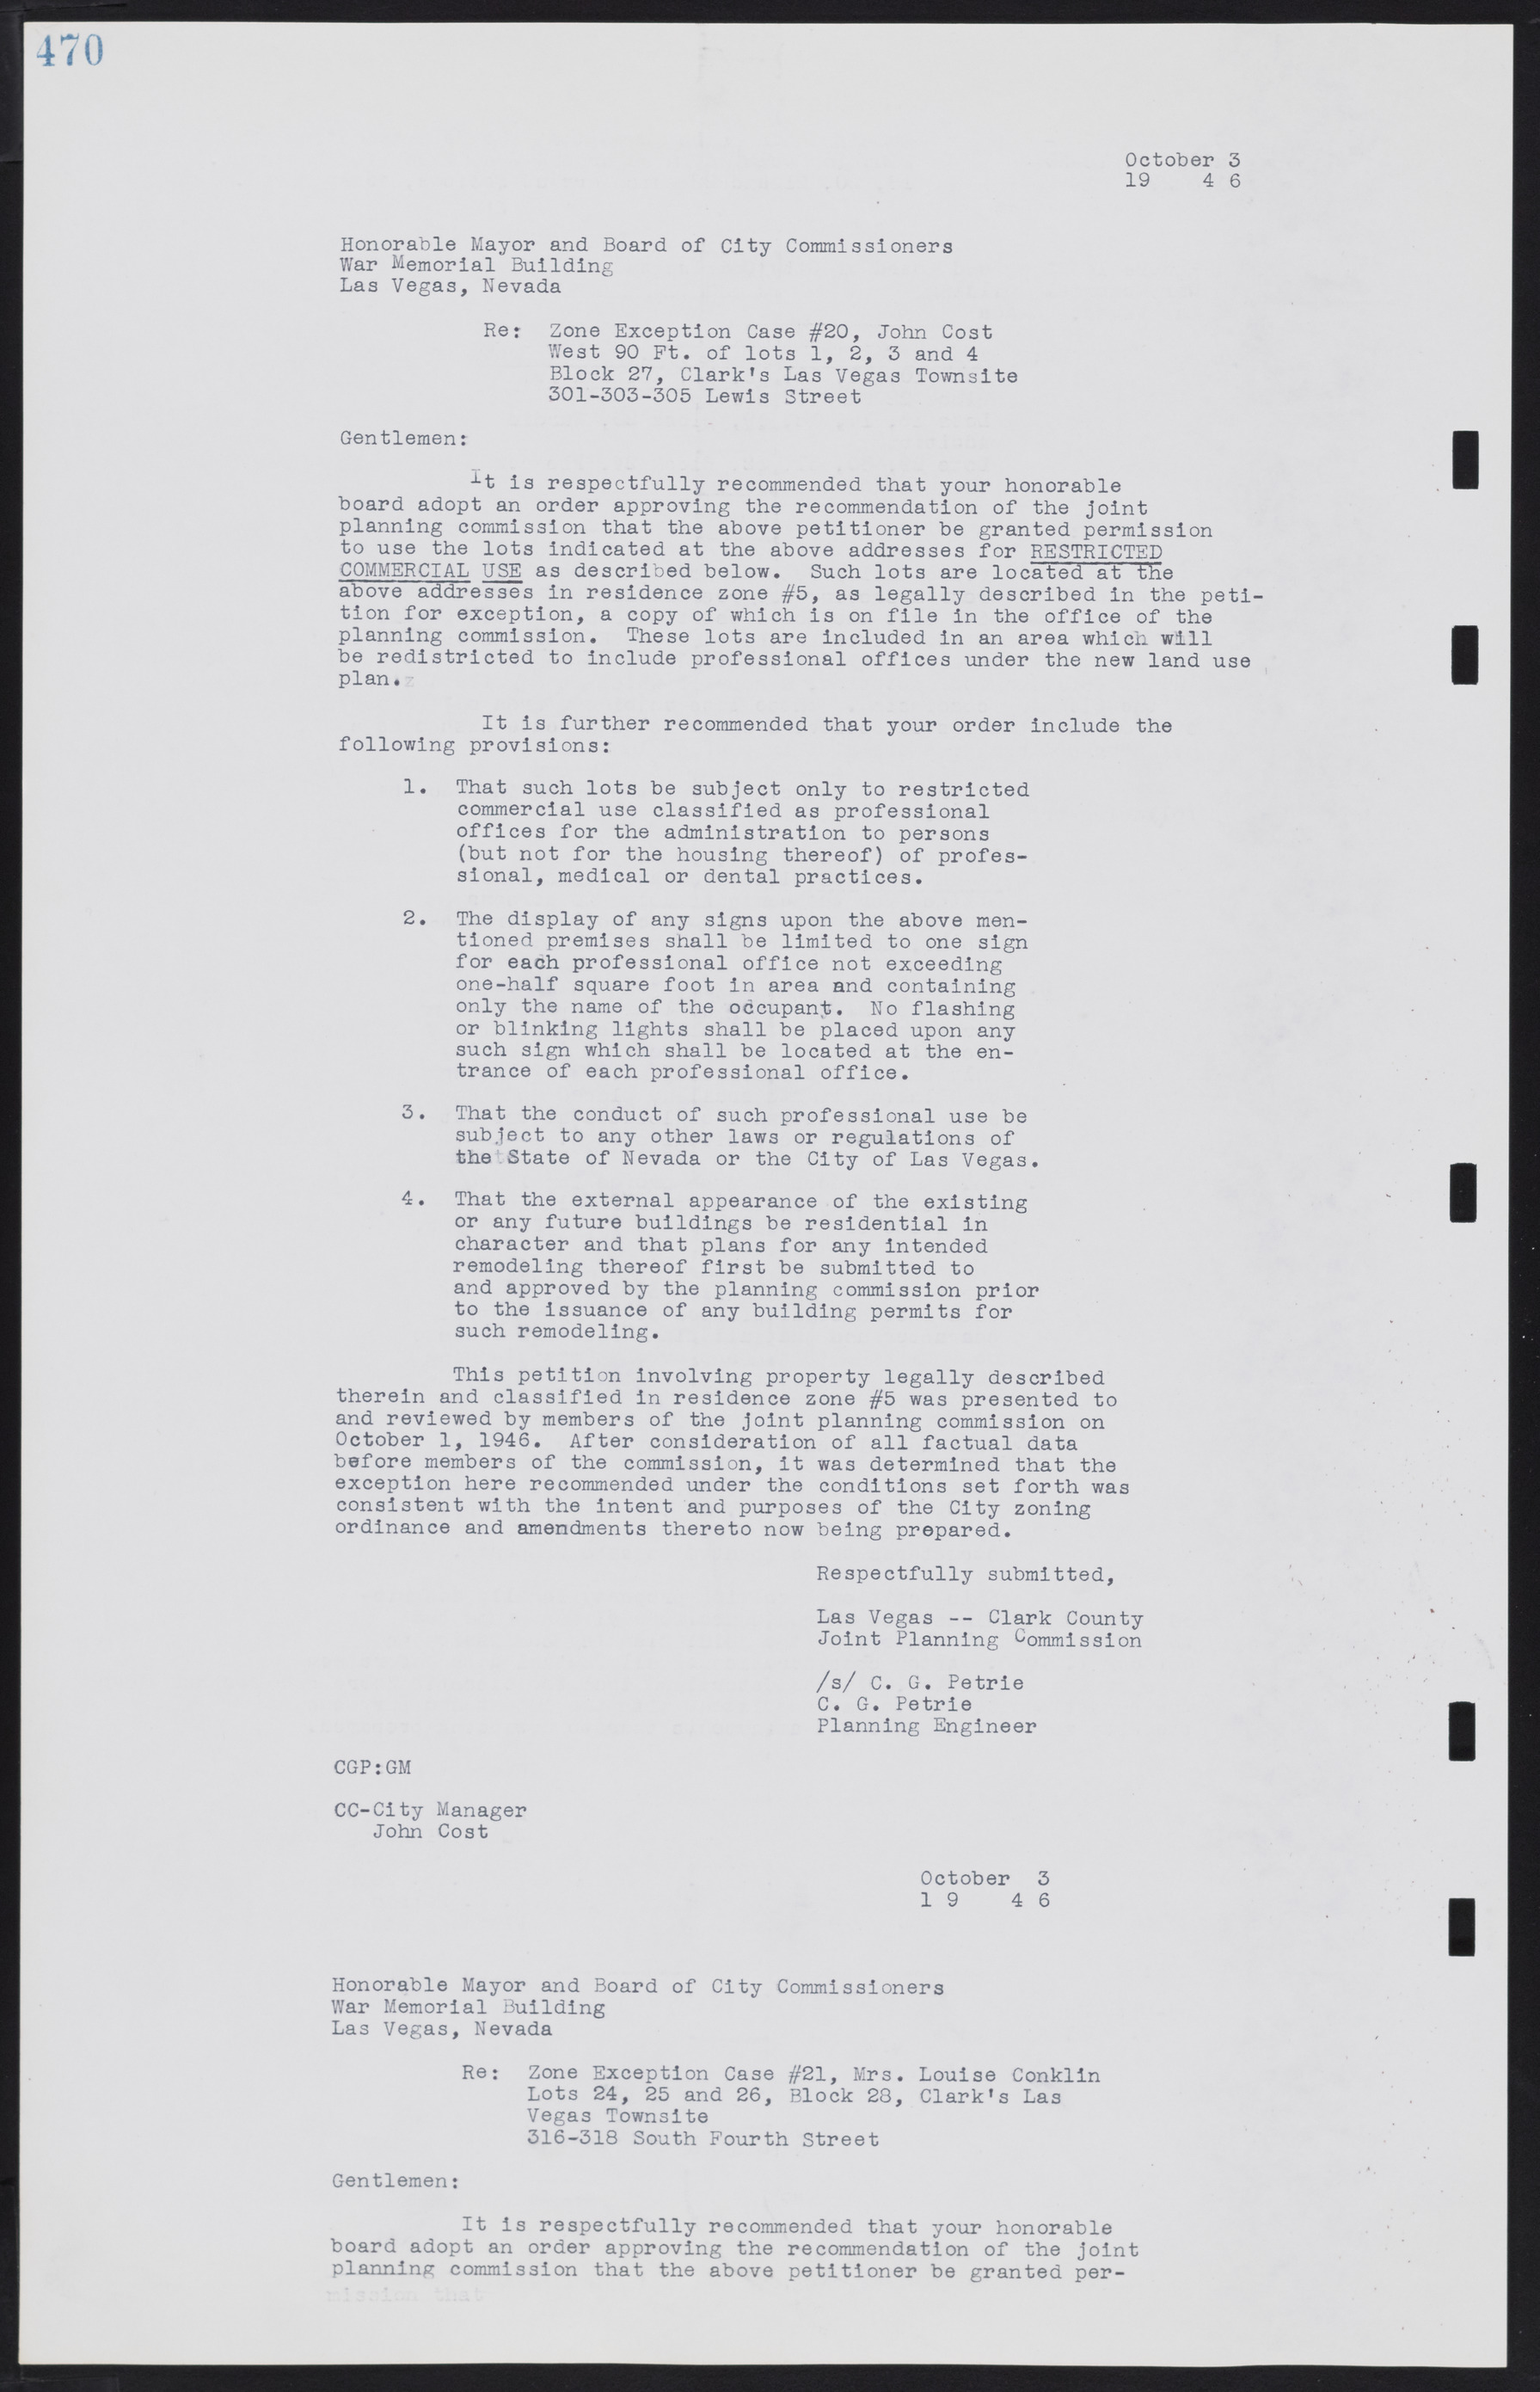 Las Vegas City Commission Minutes, August 11, 1942 to December 30, 1946, lvc000005-501